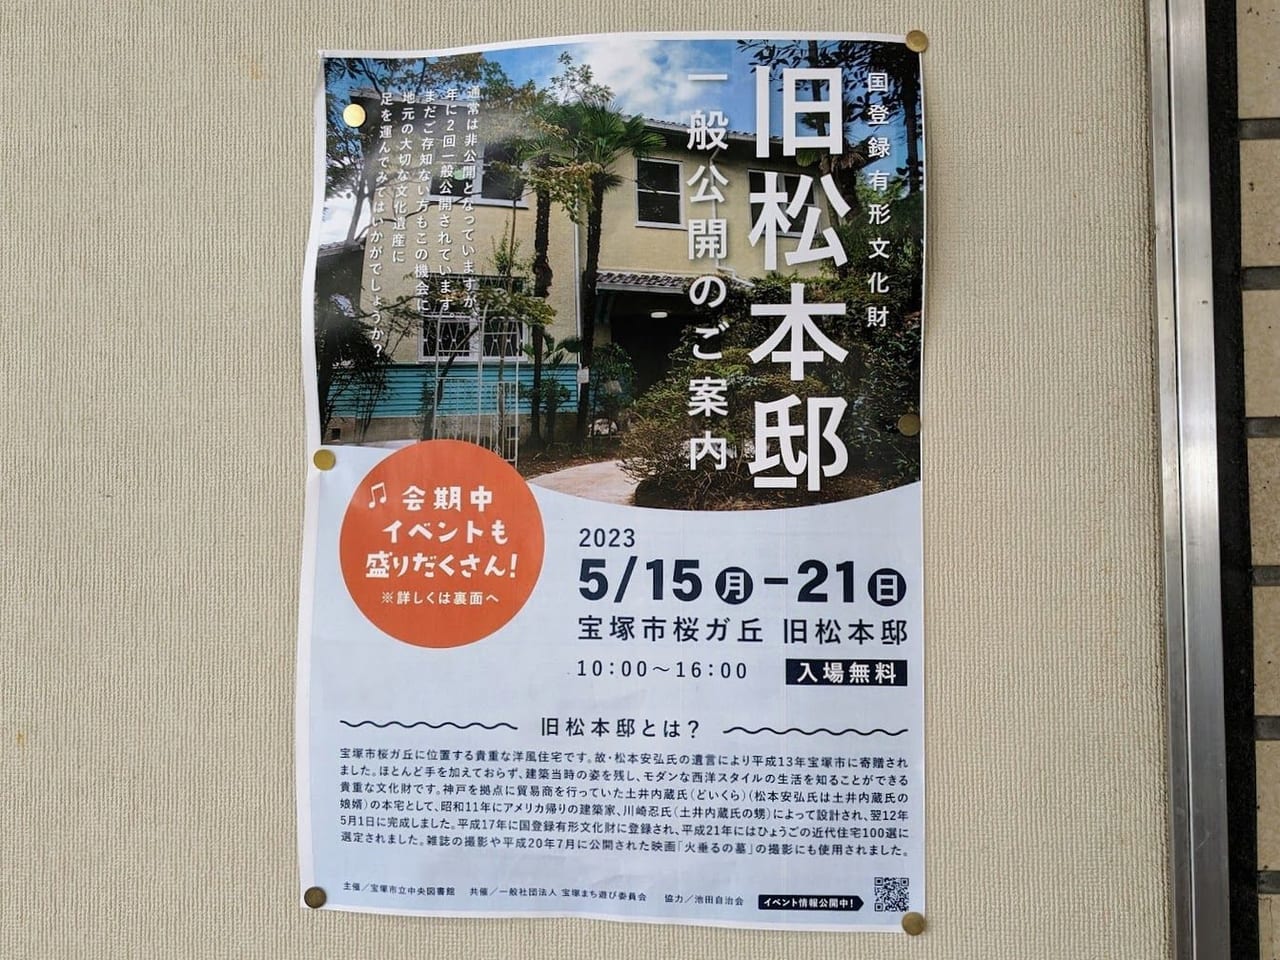 旧松本邸一般公開